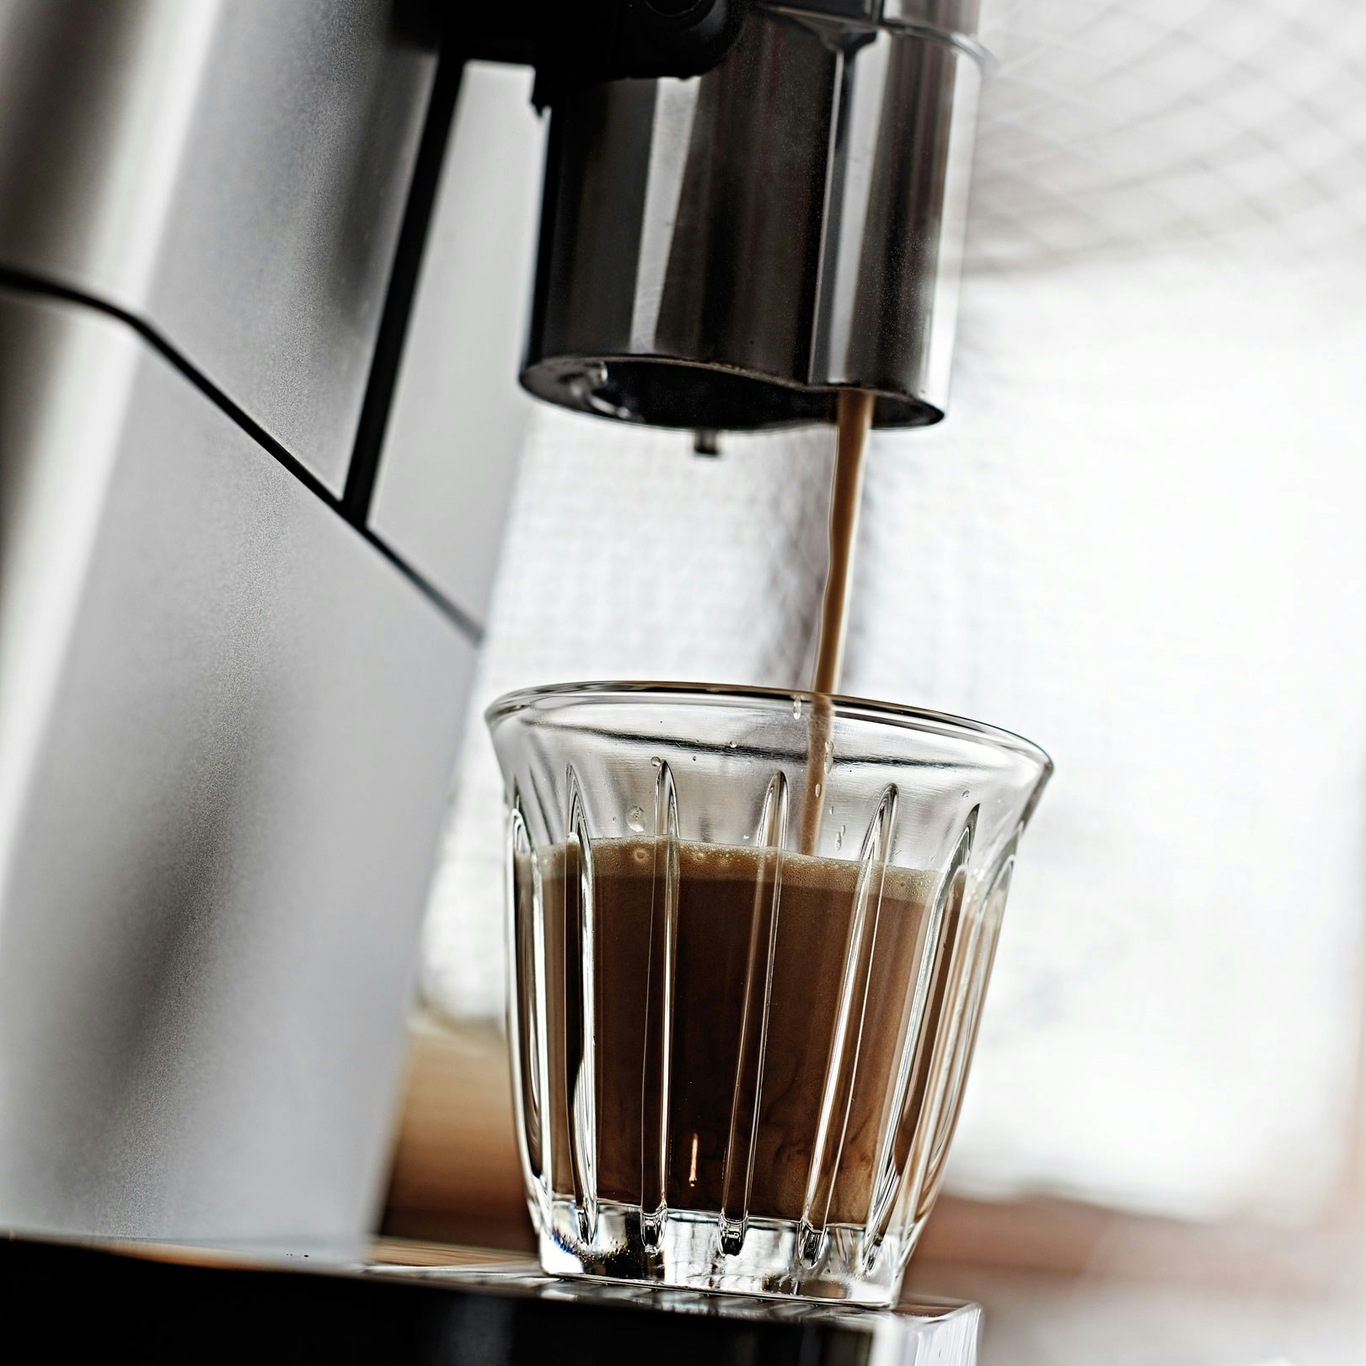 De'longhi Espresso Cups 2pk